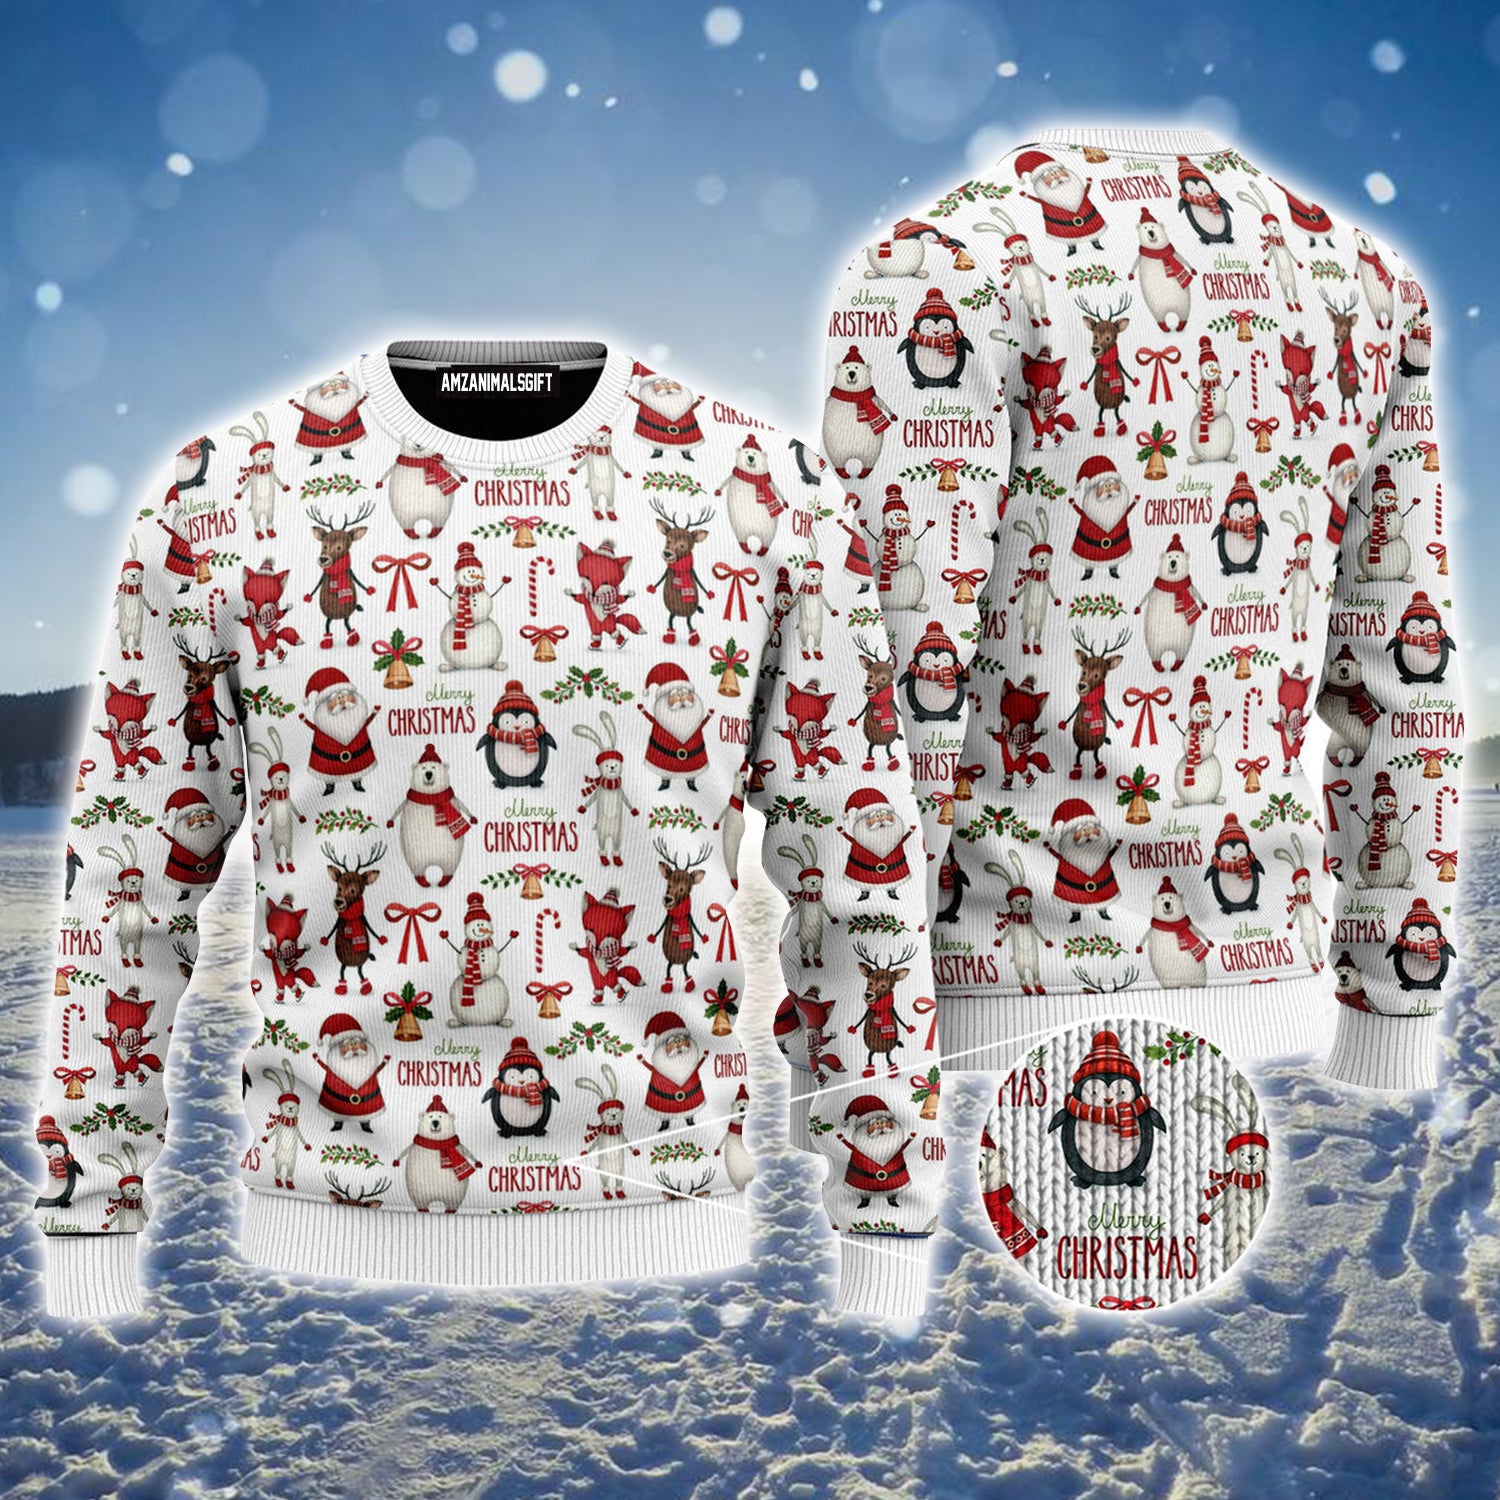 Christmas Ugly Christmas Sweater, Funny Christmas Ugly Sweater For Men & Women - Gift For Christmas, Friends, Family